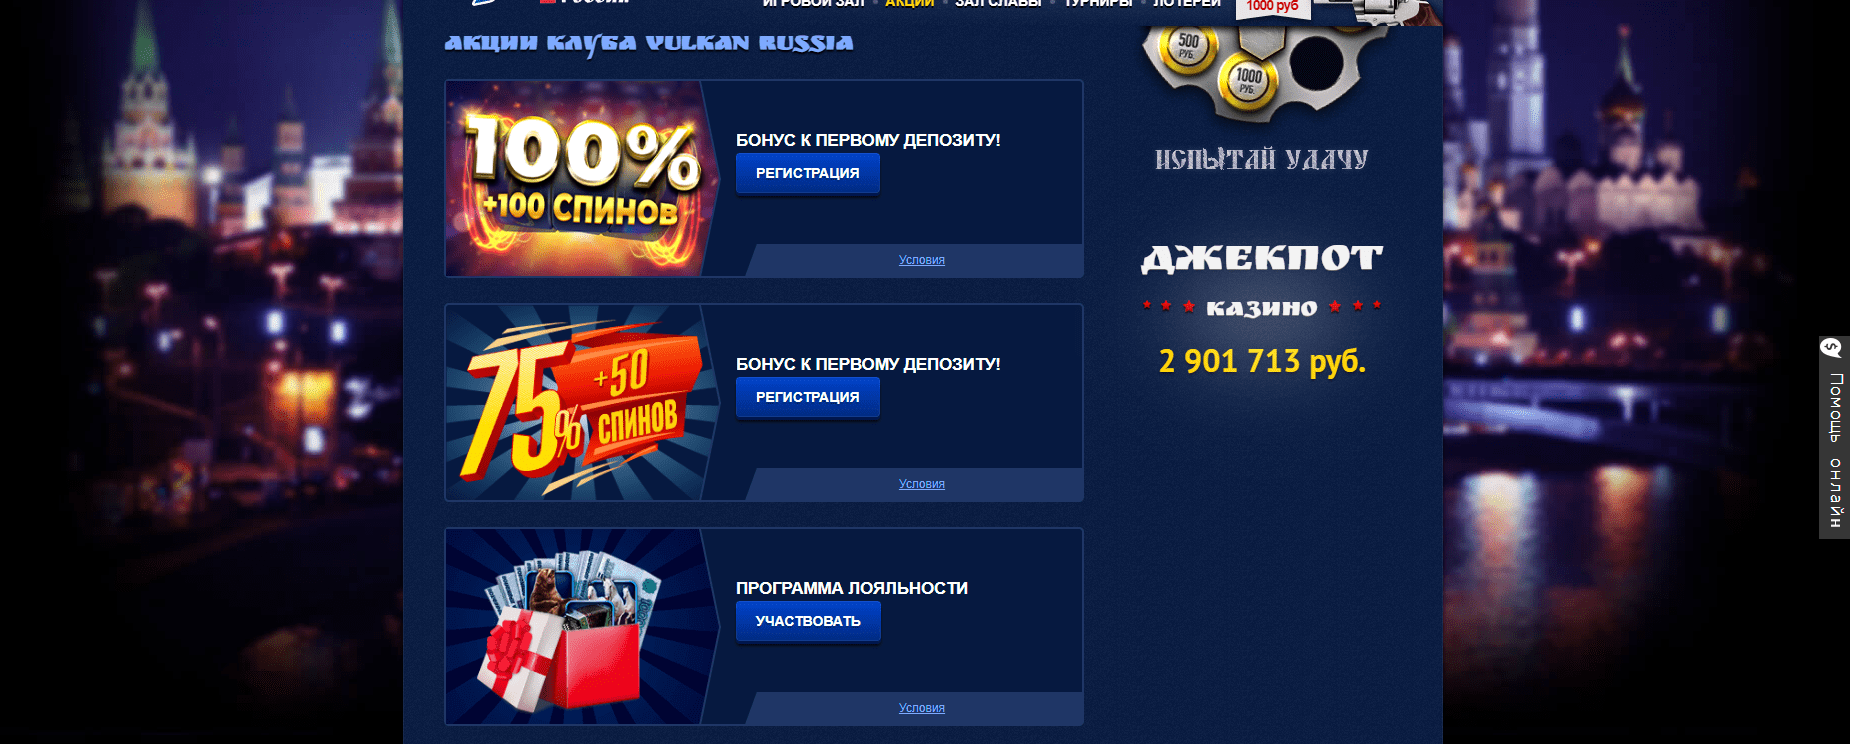 Site oficial do Vulkan casino